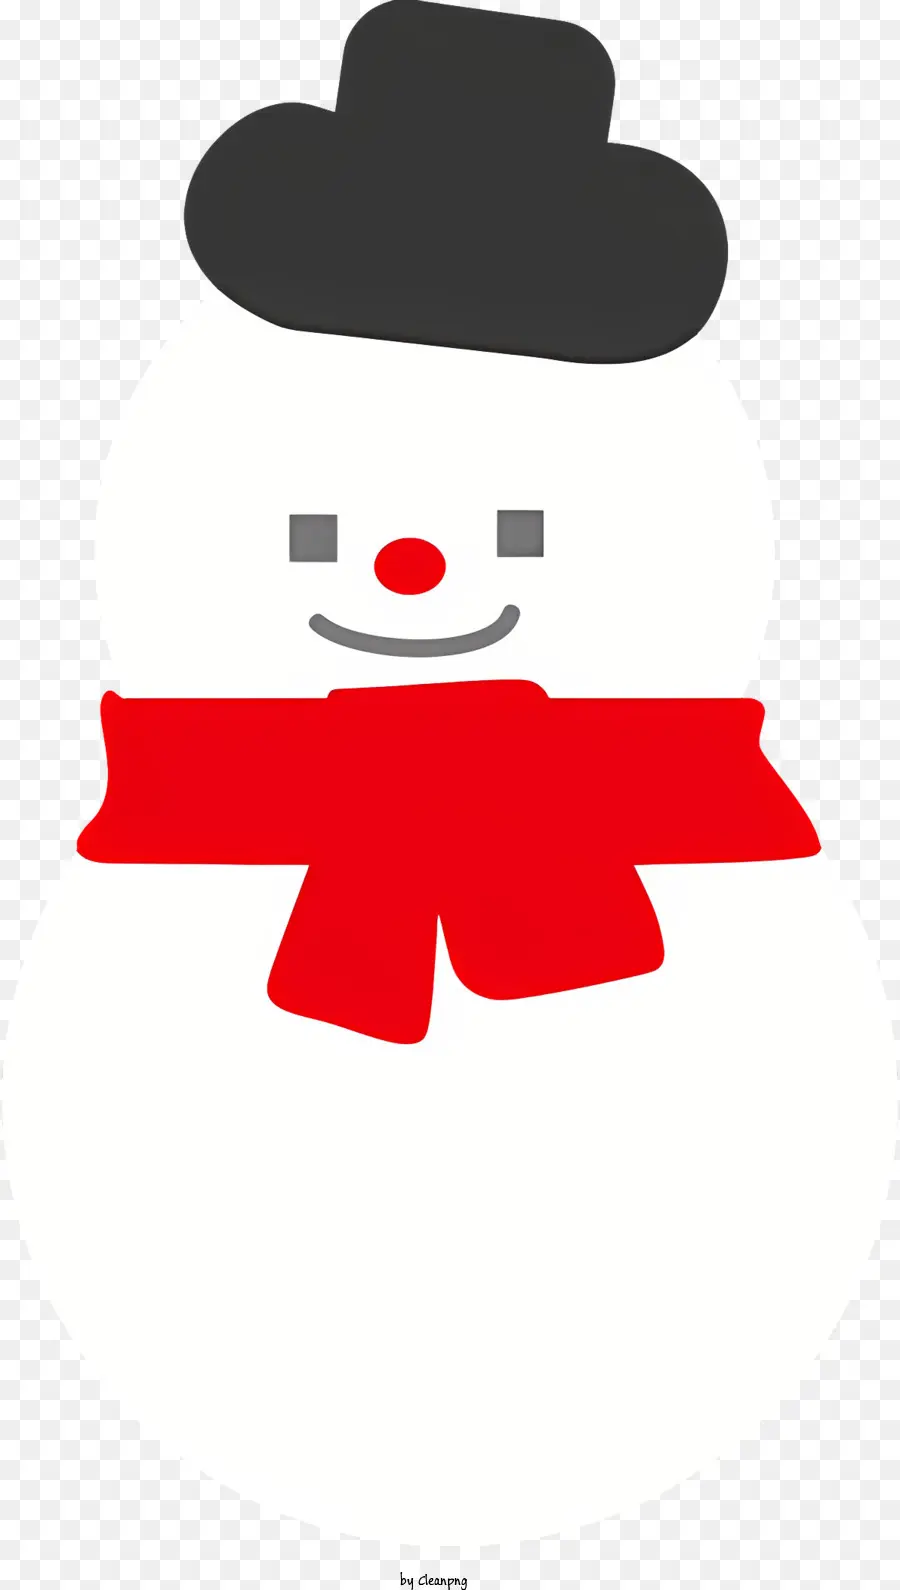 Cartunato Snowman Black and White Striped Scarf Black Cappello Banda bianca Brand Brim - Snowman sorridente con sciarpa e cappello a strisce